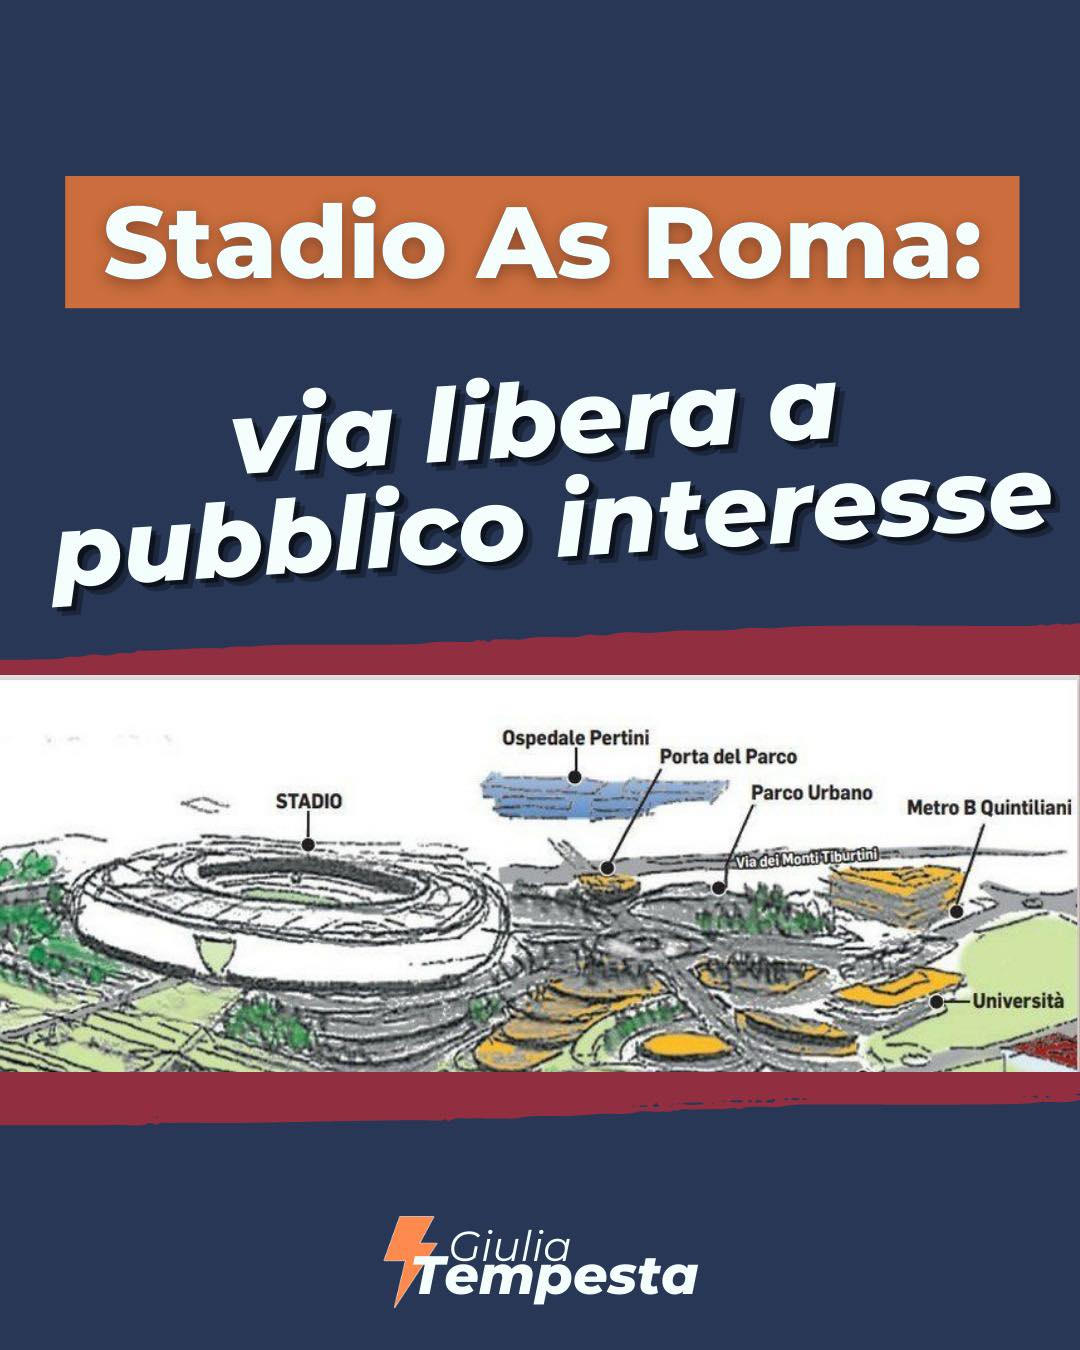 Scopri di più sull'articolo Nuovo Stadio della Roma, via libera al pubblico interesse